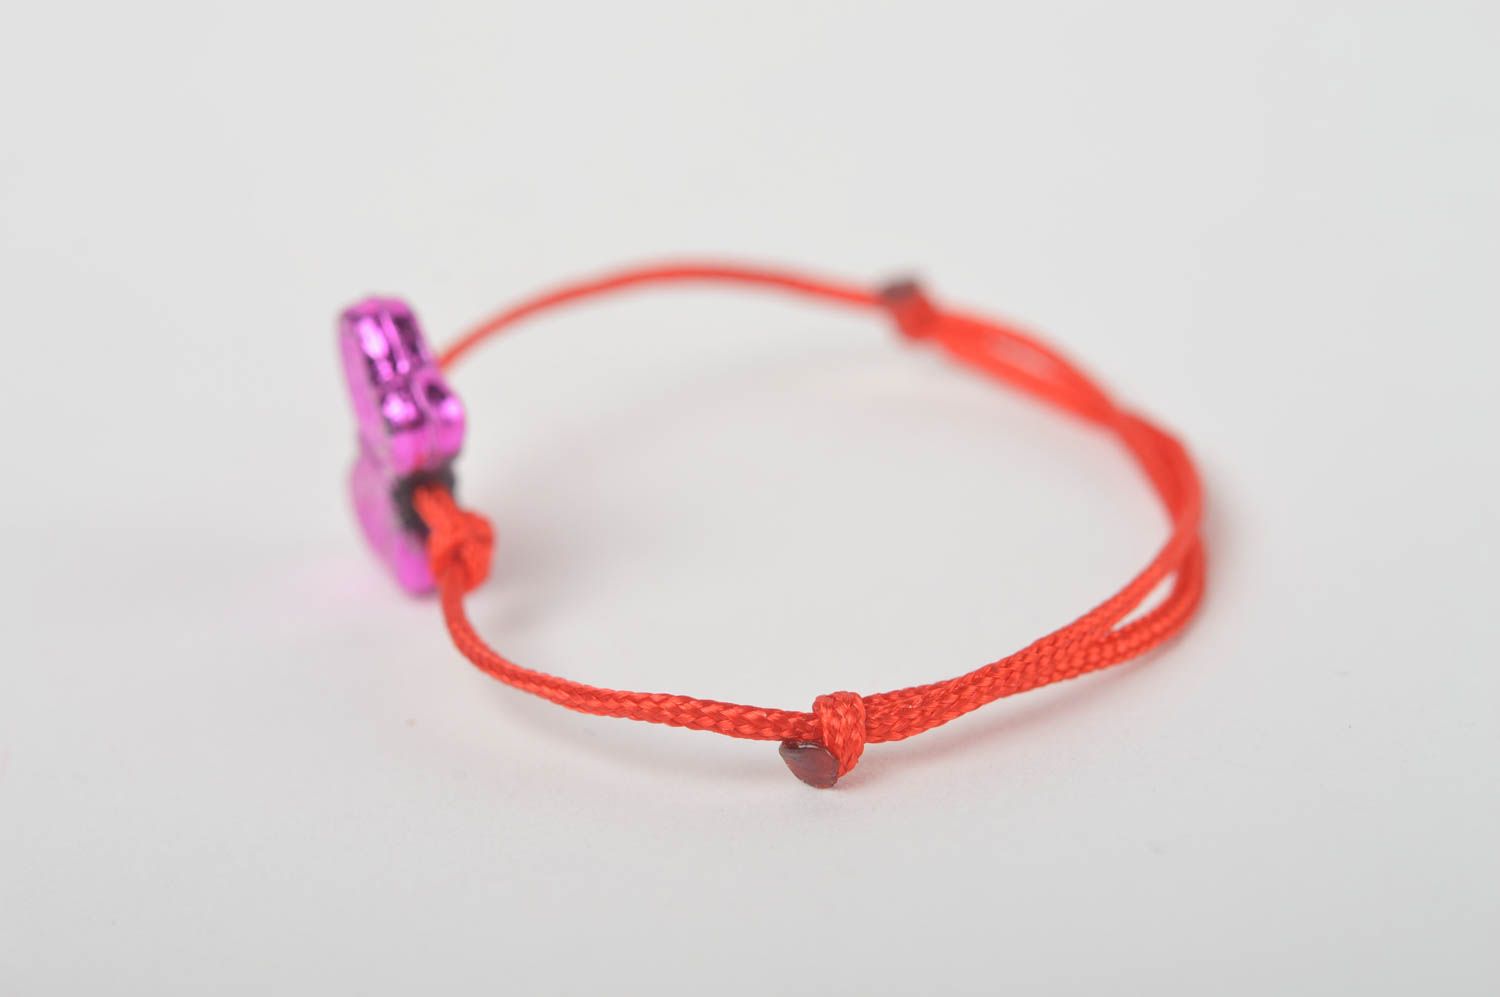 Textil Armband handgemacht Mode Schmuck in Rot wunderschön Geschenk für Mädchen foto 4